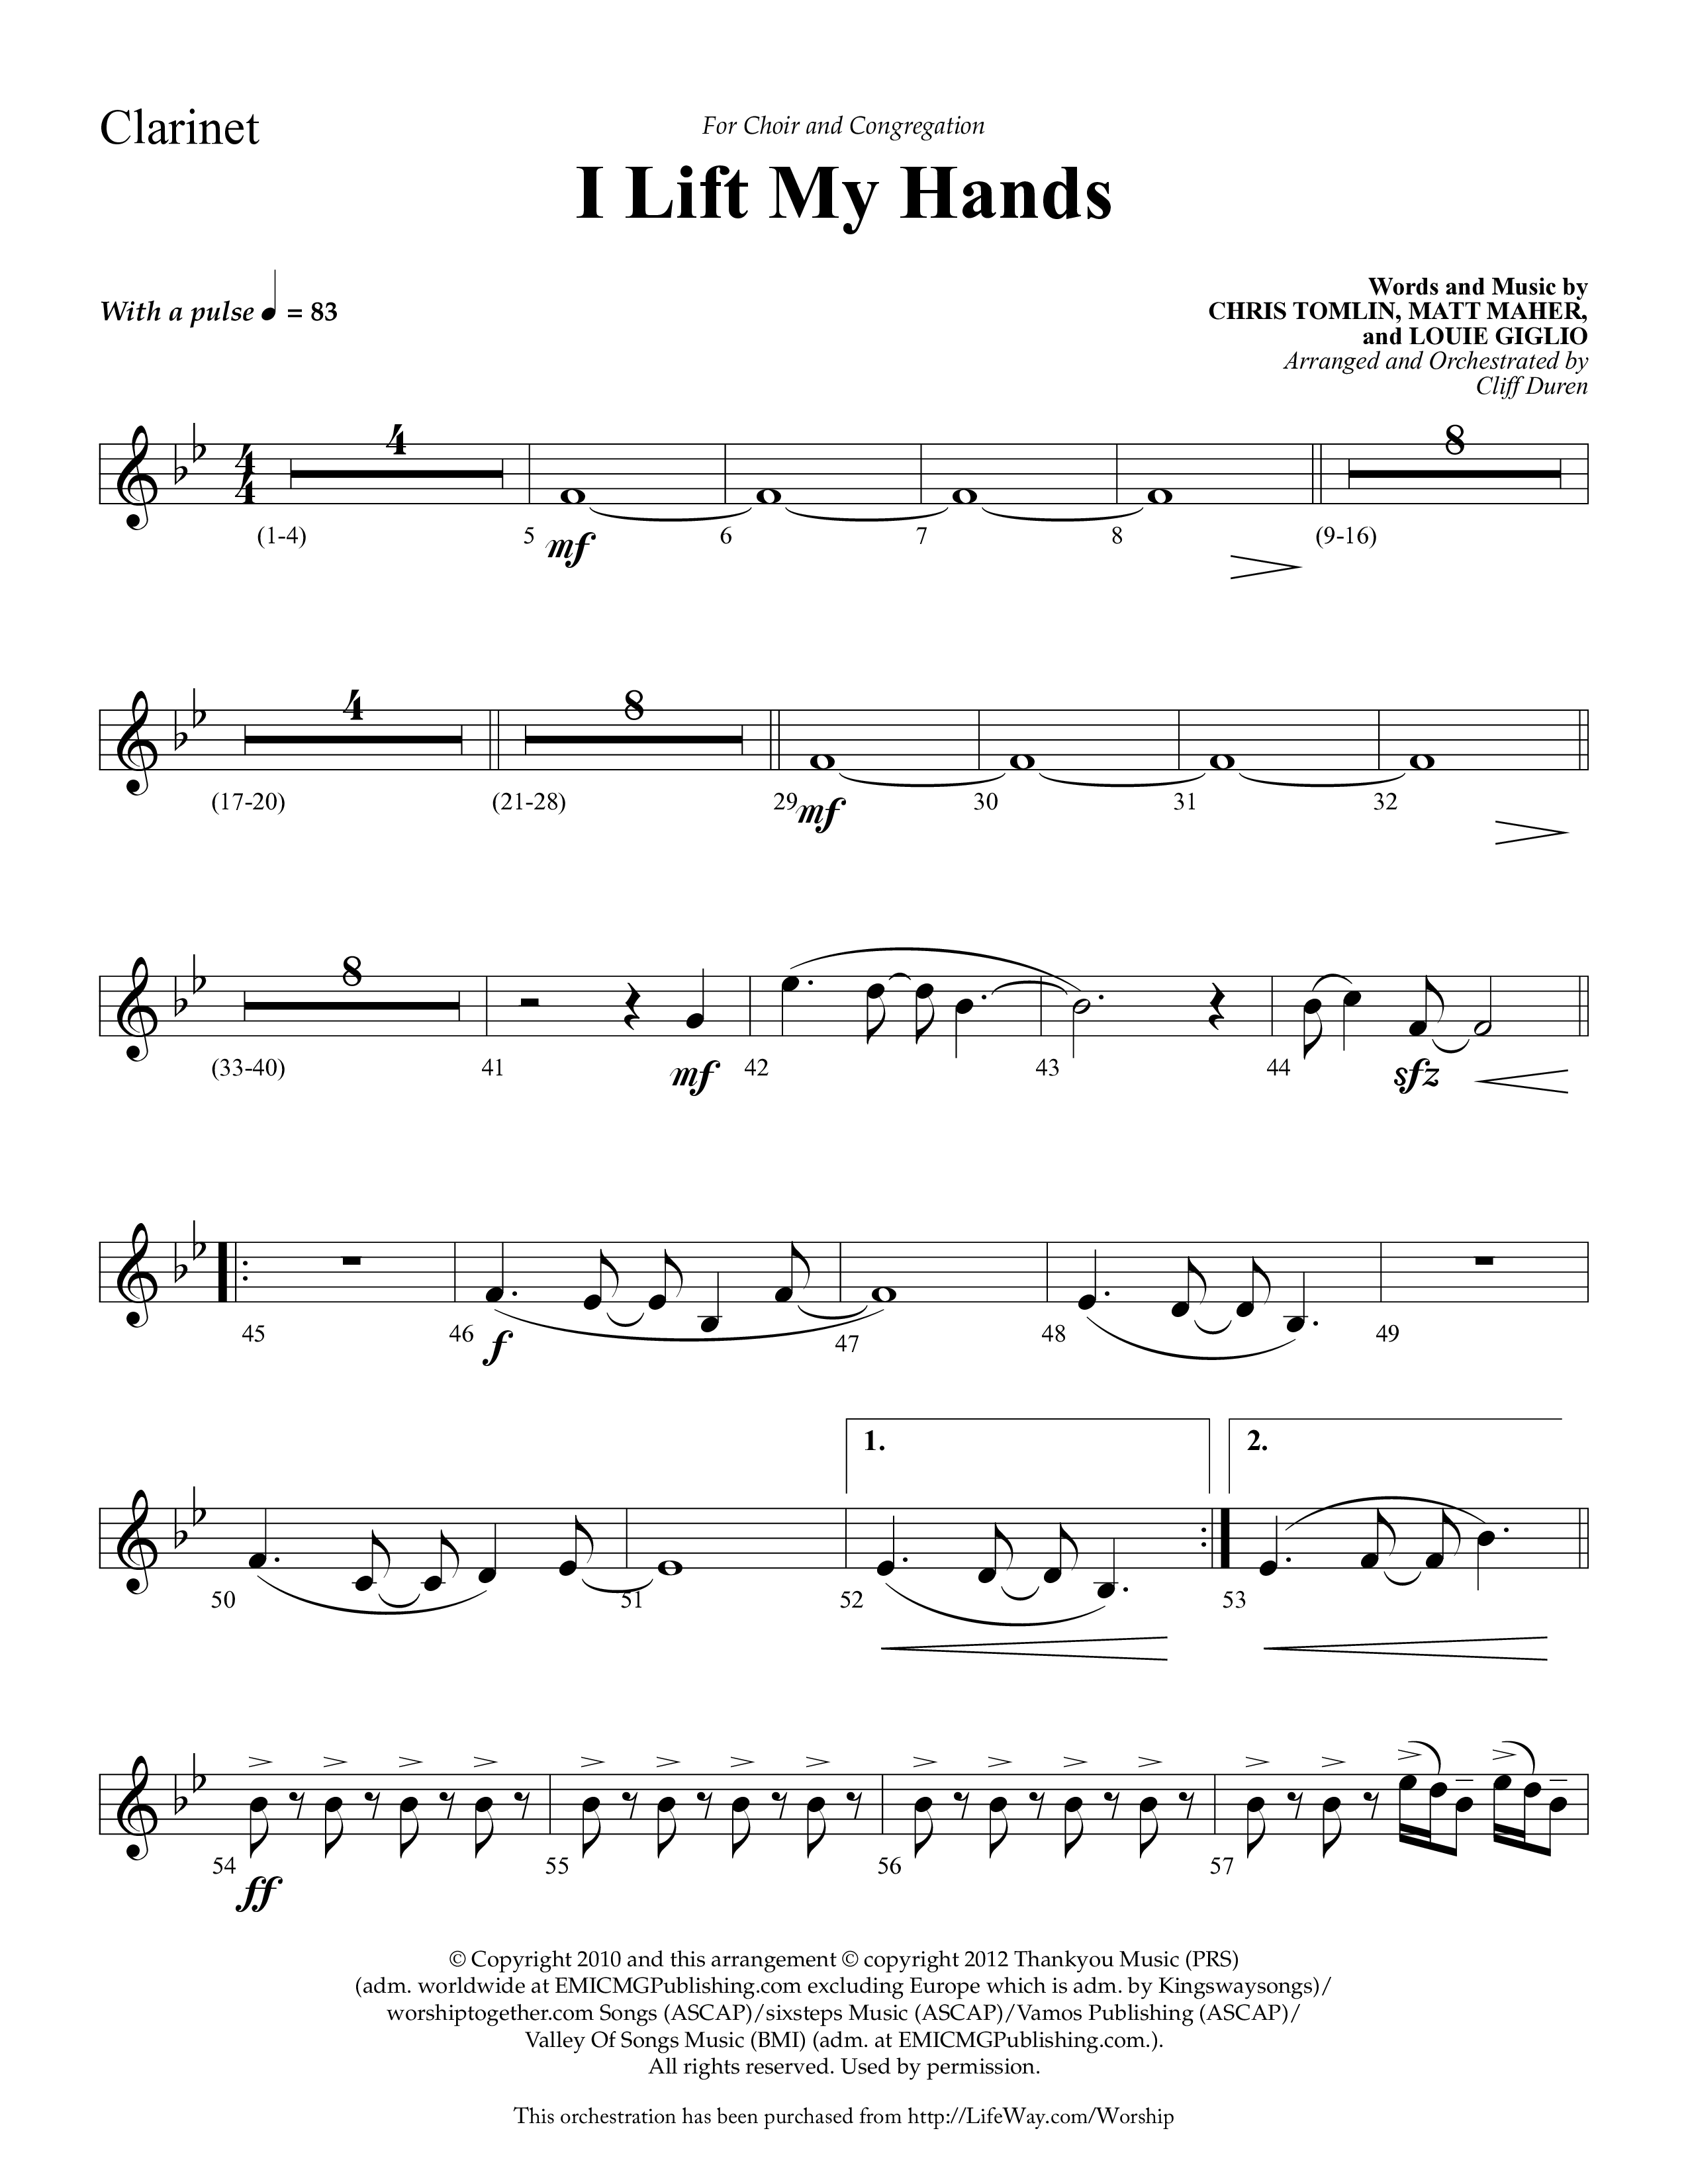 I Lift My Hands (Choral Anthem SATB) Clarinet 1/2 (Lifeway Choral / Arr. Cliff Duren)